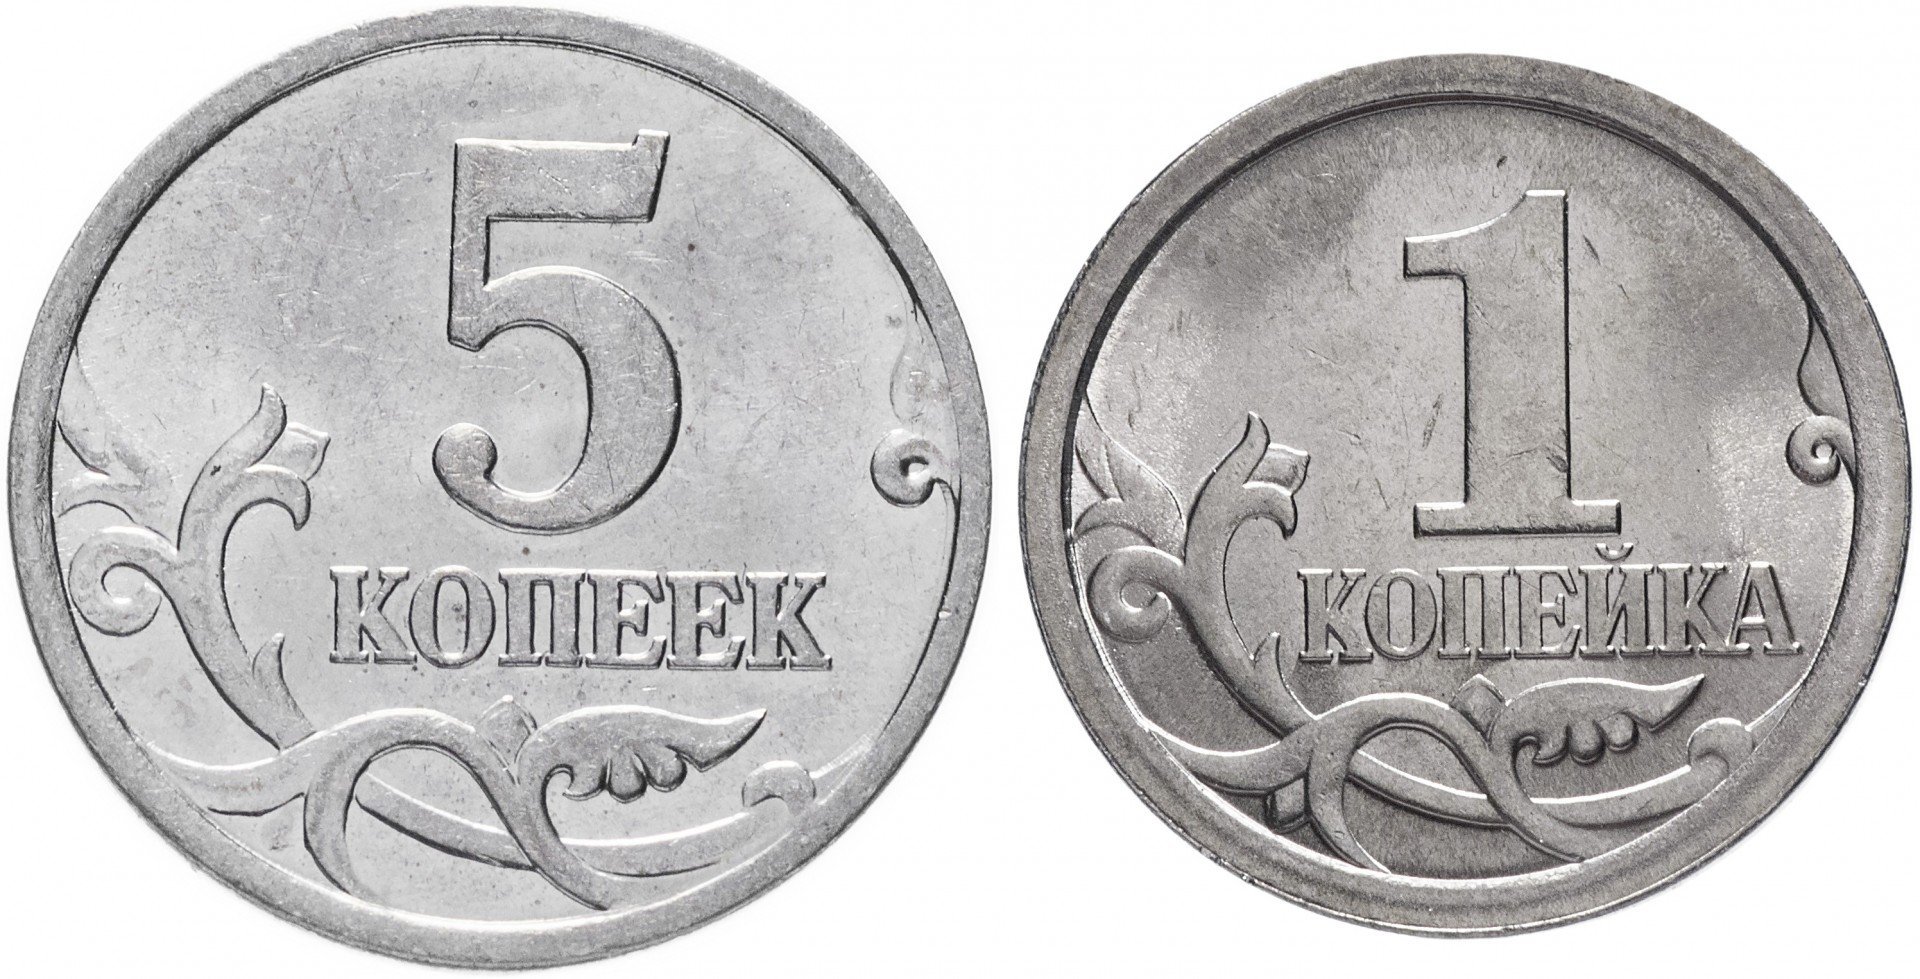 5 14 в рублях. Российские монеты 1 копейка. Монеты 5 копеек и 1 копейка и 1 рубль. 1 Копейка и 5 копеек. Монеты 1 копейка 5 копеек.